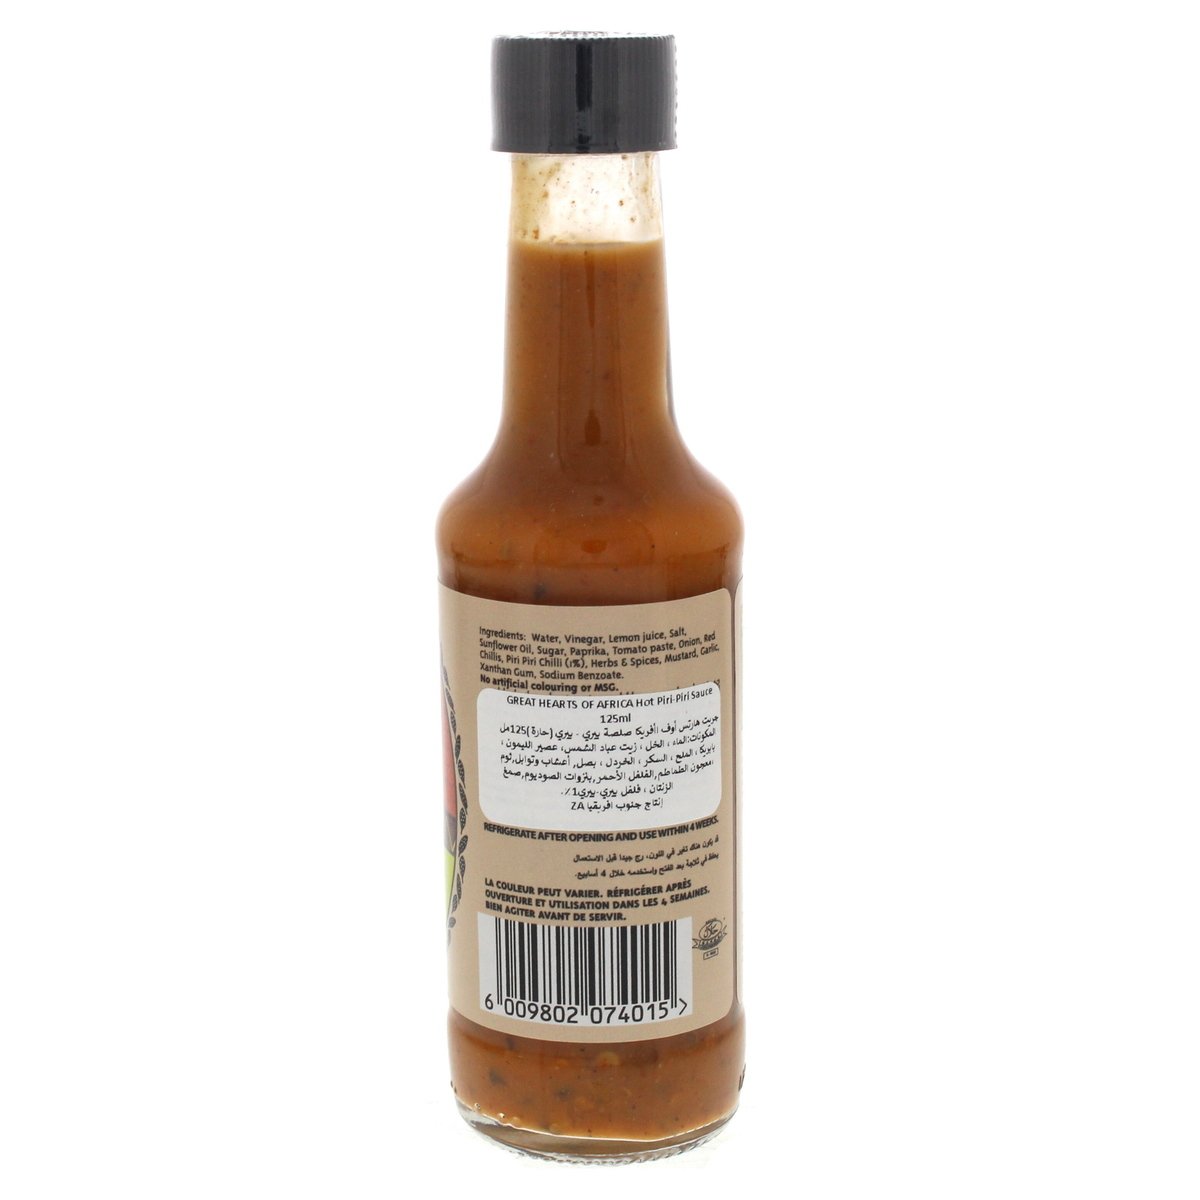 Great Hearts Of Africa Hot Piri-Piri sauce 125 ml